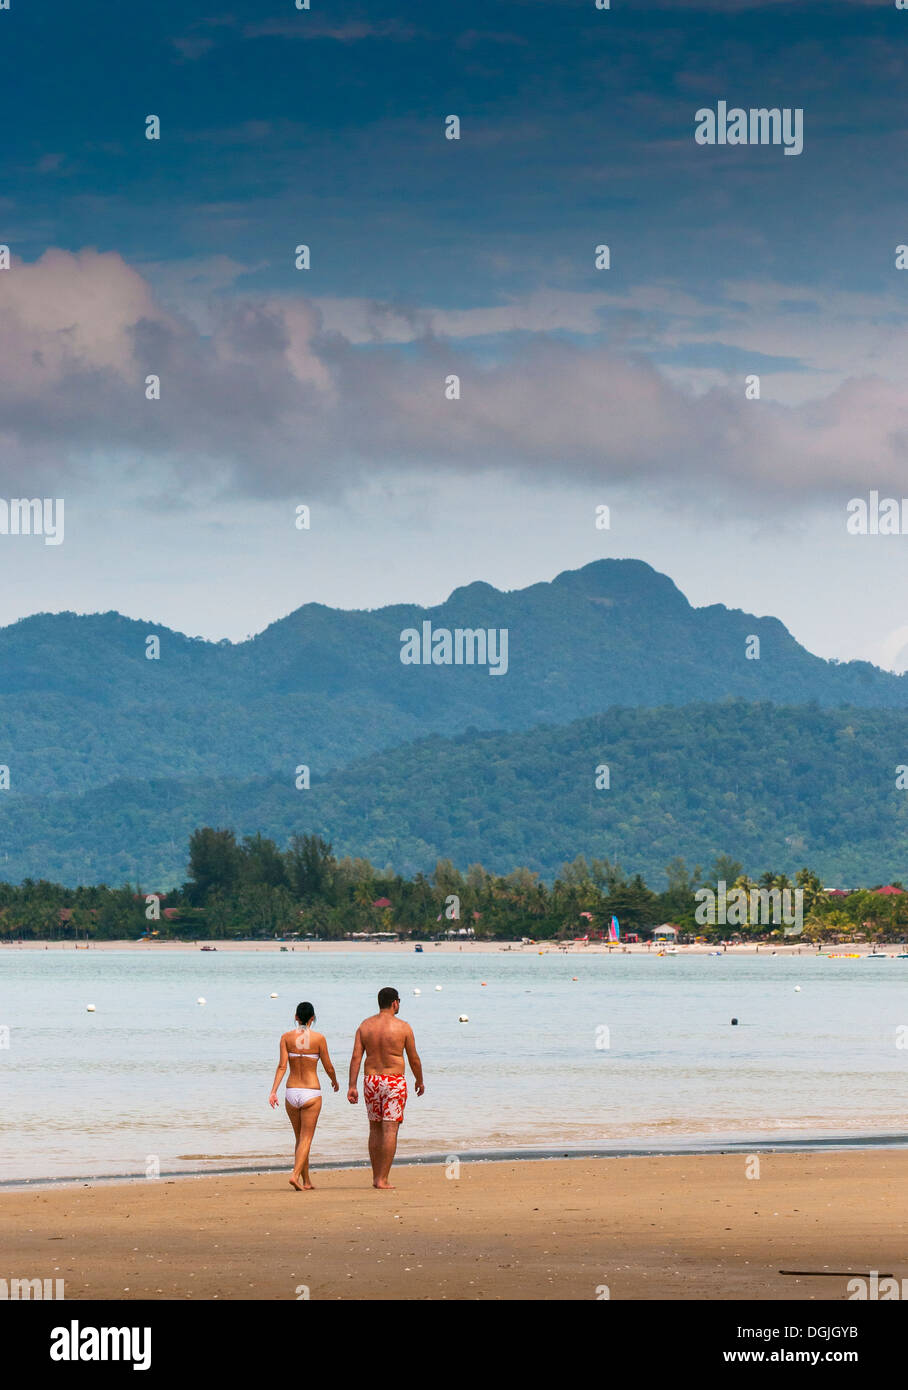 Two people walking along Pentai Tengah beach in Langkawi. Stock Photo